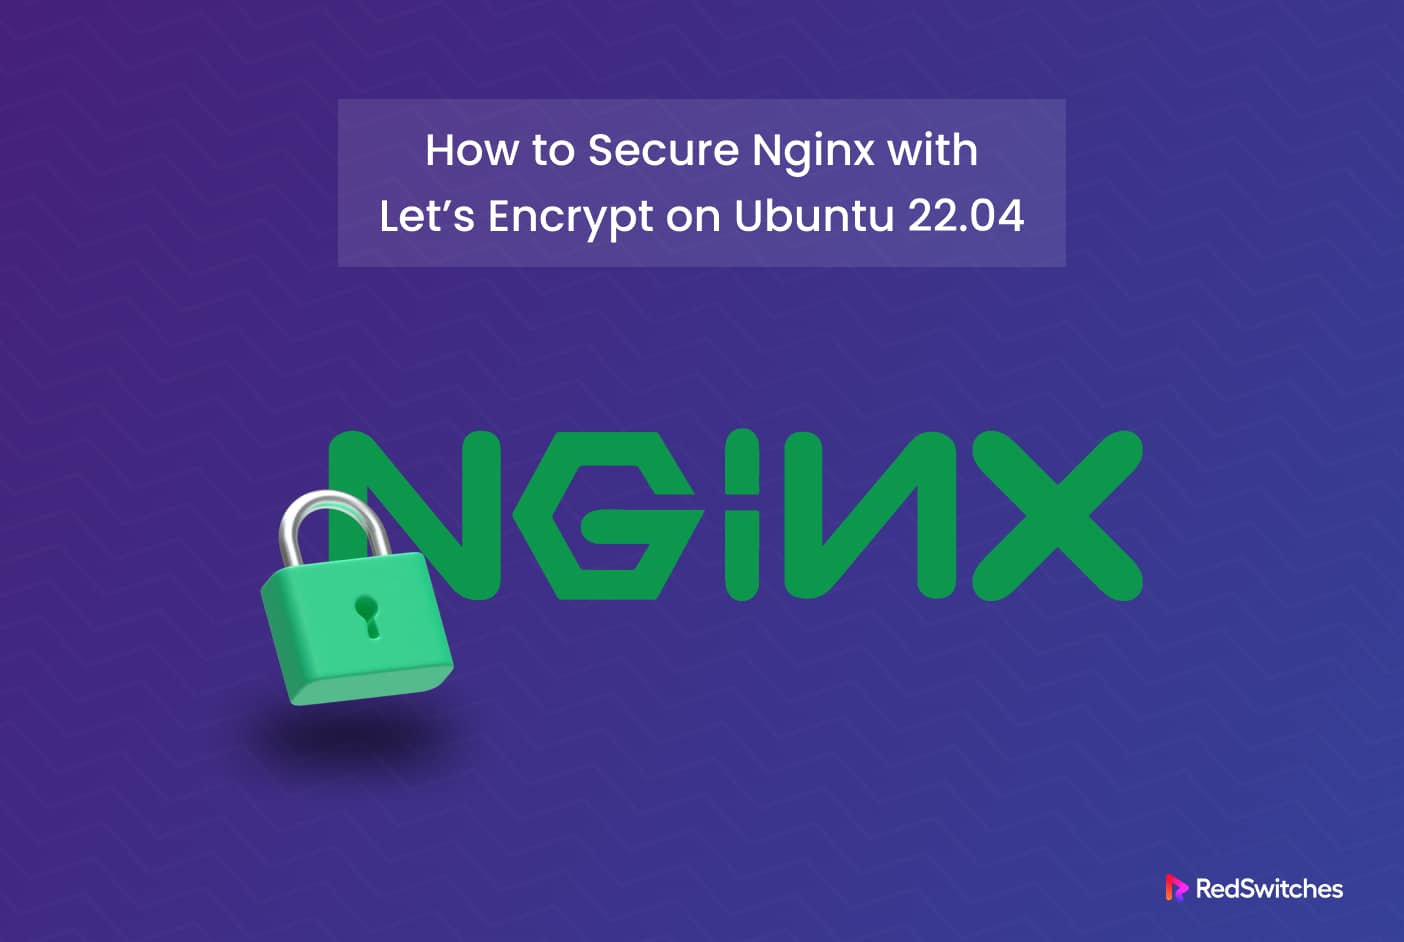 Secure Nginx with Let’s Encrypt on Ubuntu